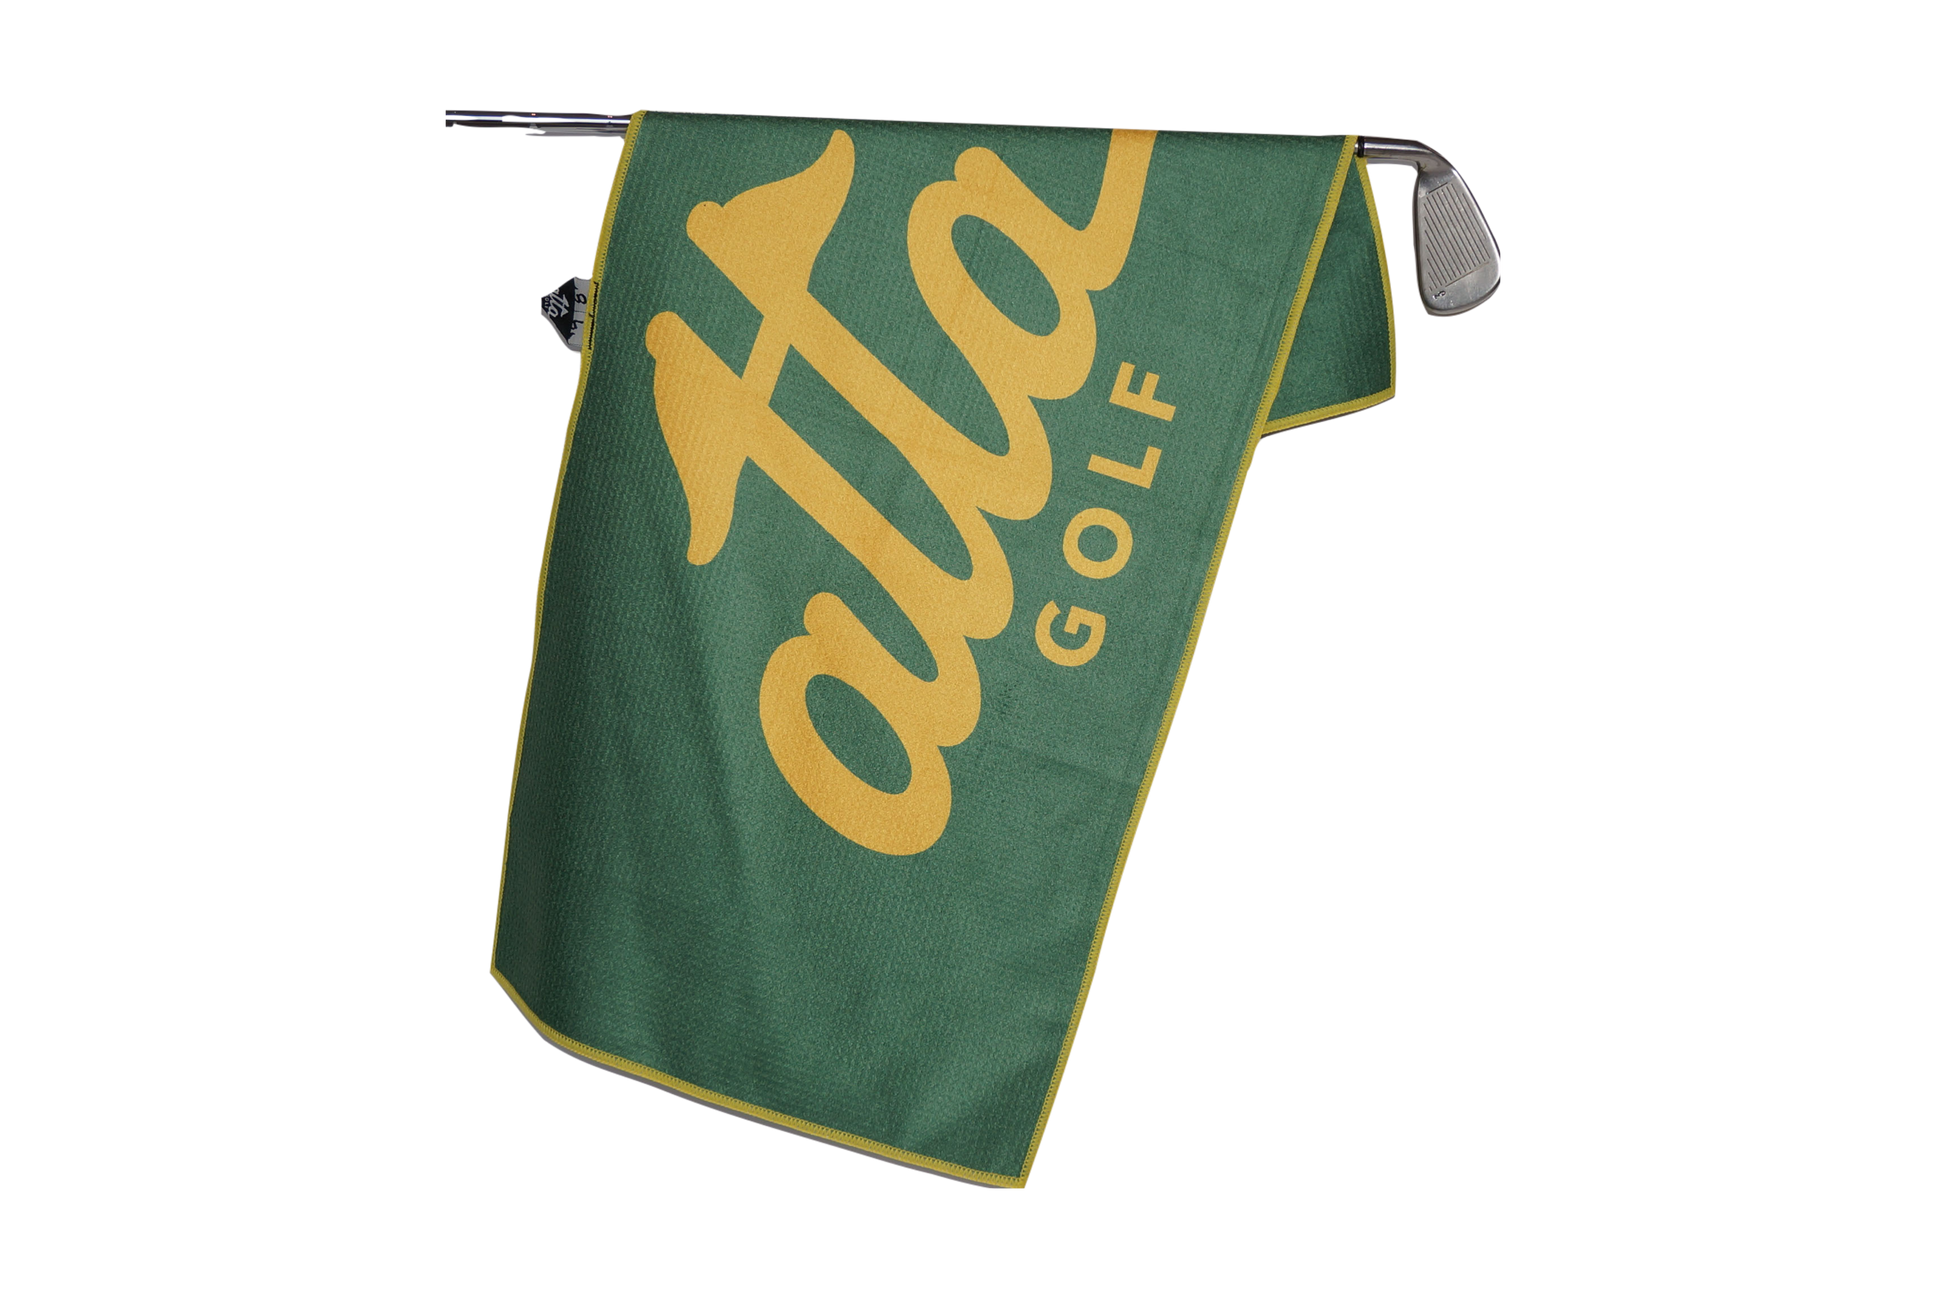 Tiger Head Golf Towel - Matchstick Golf